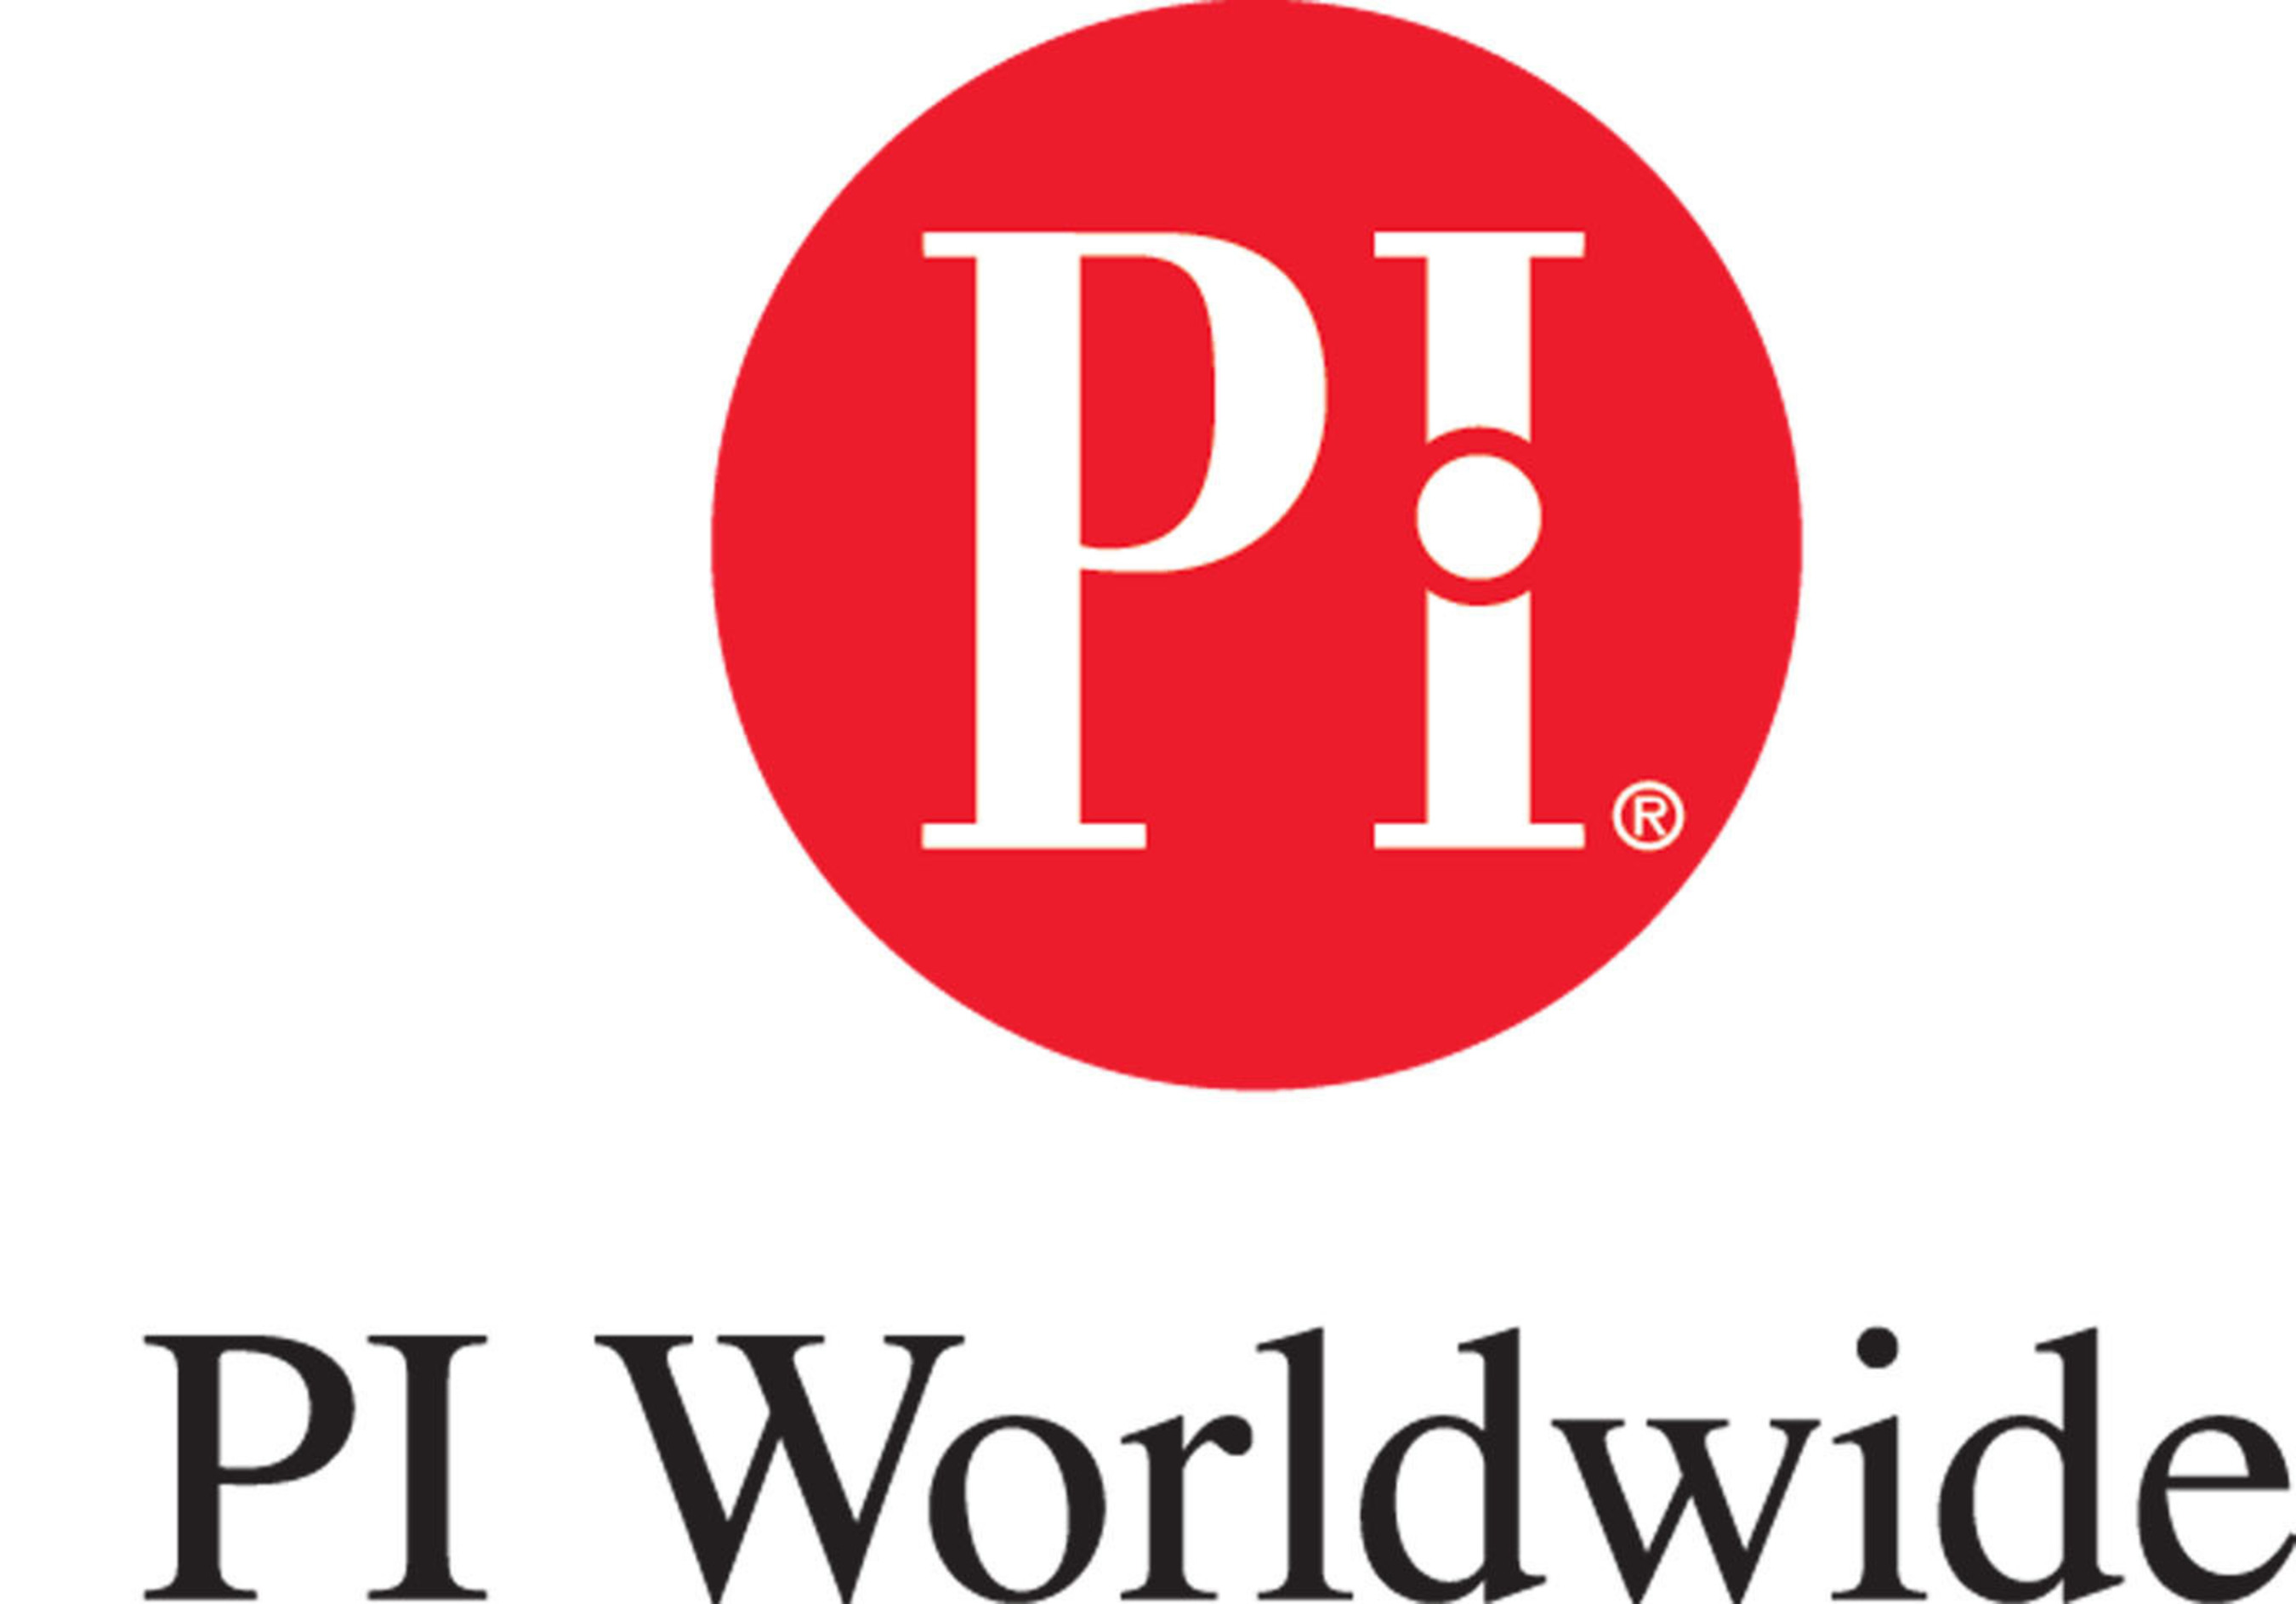 PI Worldwide logo. (PRNewsFoto/PI Worldwide)